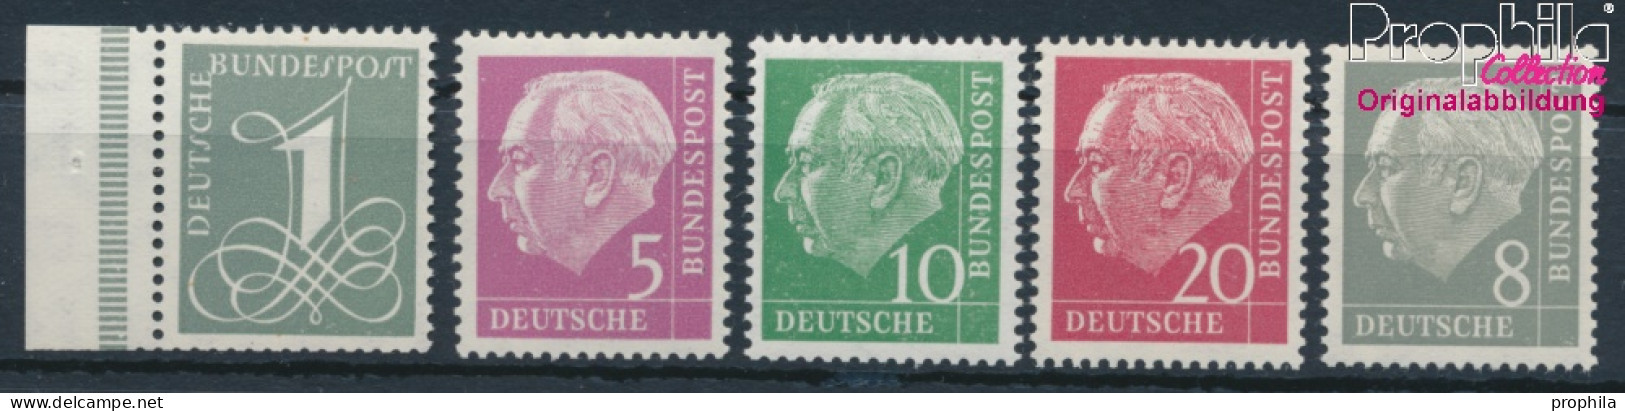 BRD 179Y,182Y,183Y,185Y,285Y (kompl.Ausg.) Liegendes Wasserzeichen Postfrisch 1960 Heuss I (10347827 - Unused Stamps